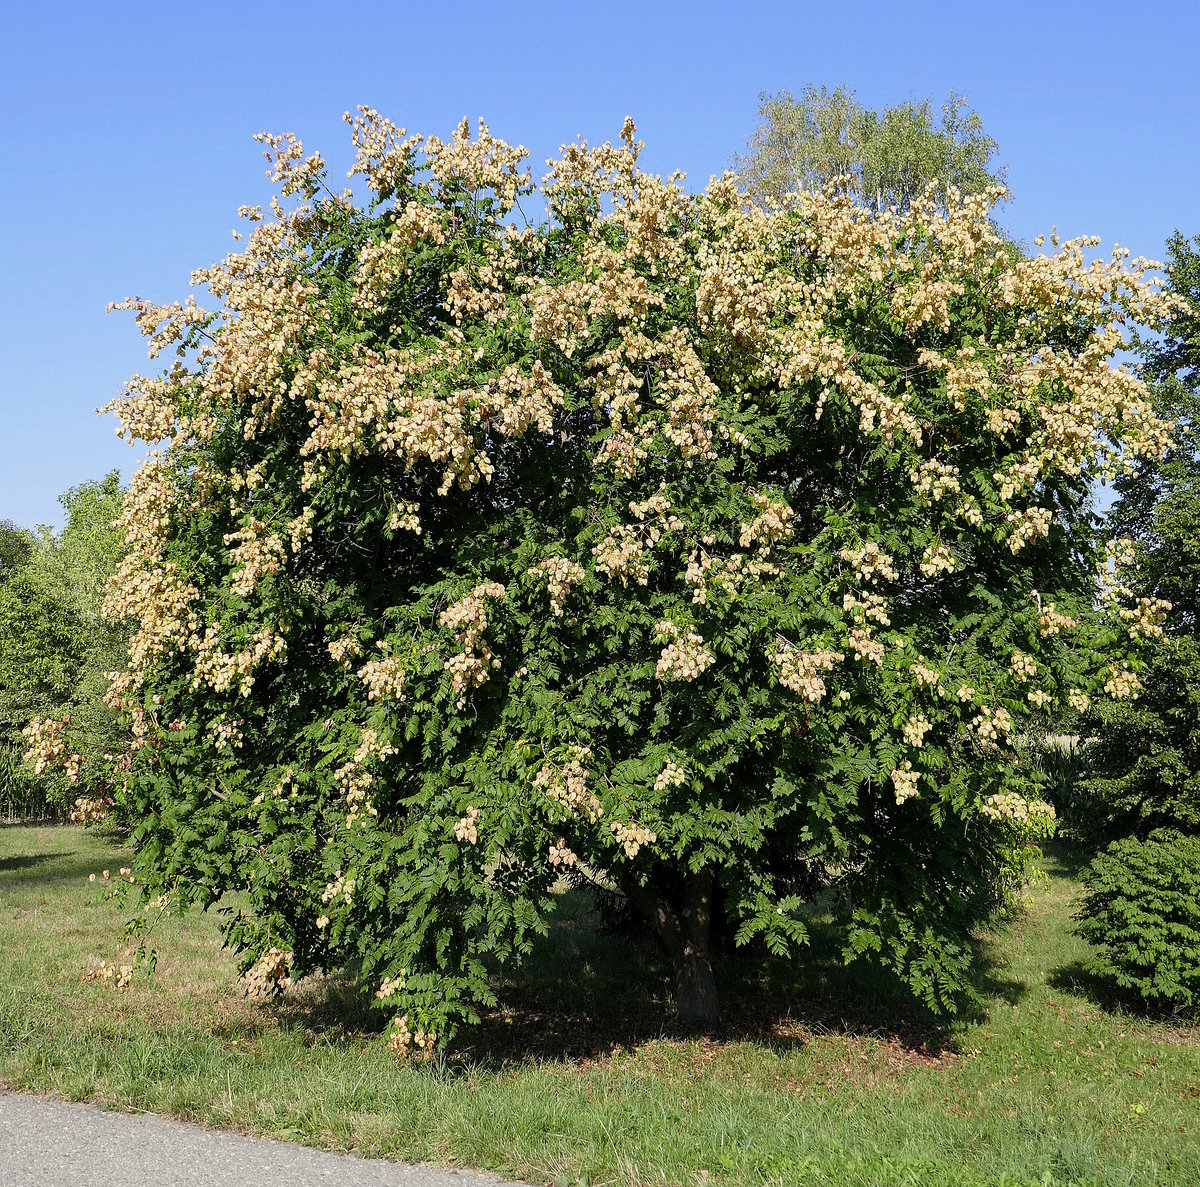 der Blasenbaum oder Blasenesche (Kroelreuteria paniculata) mit Früchten, der Zierstrauch stammt ursprünglich aus Ostasien und wird bei uns in Parkanlagen und Gärten gepflanzt, Aug.2020